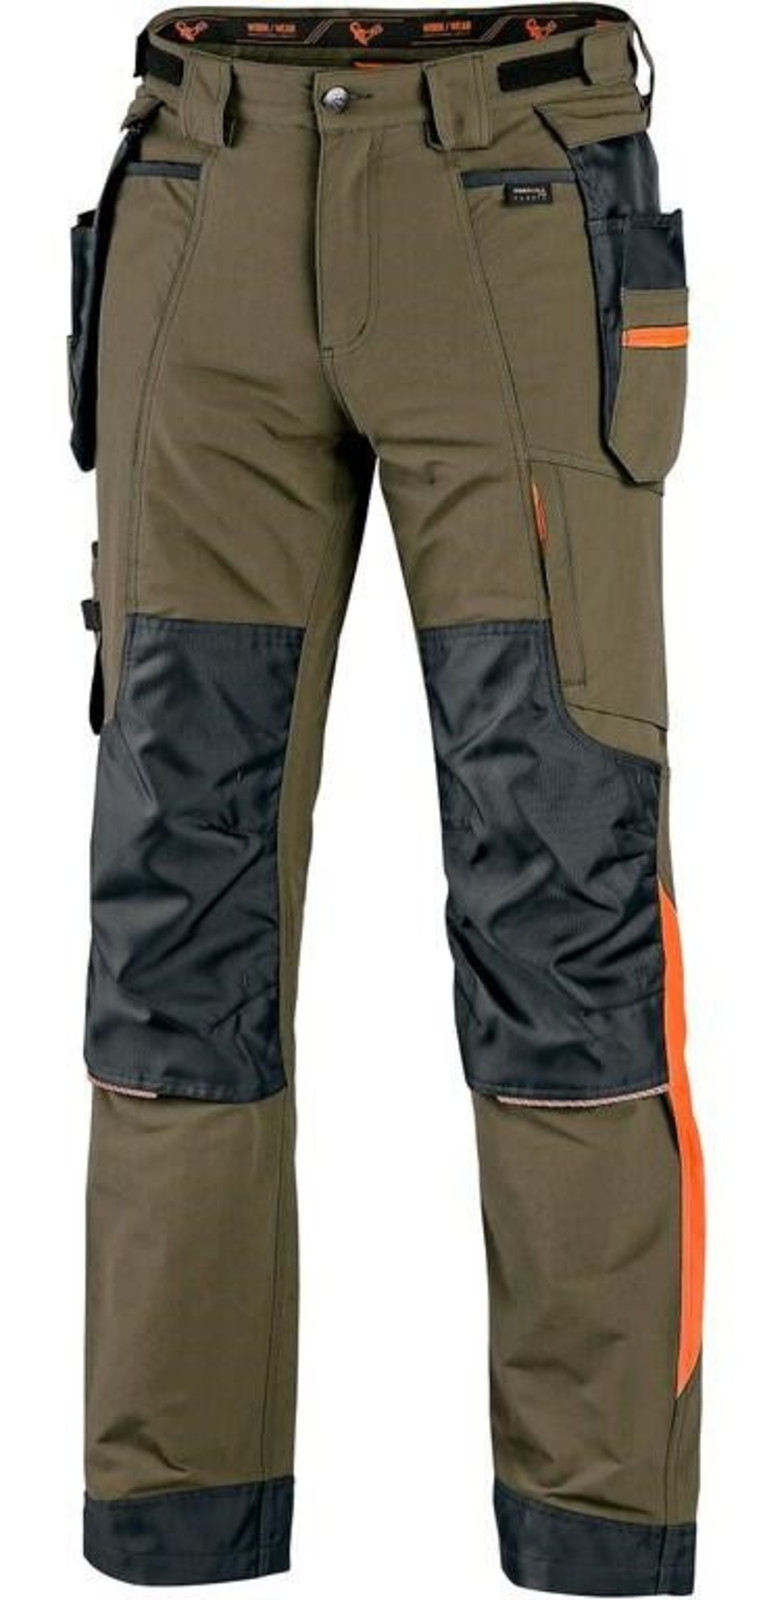 Montérkové nohavice CXS Naos s reflexnými doplnkami - veľkosť: 64, farba: khaki/oranžová